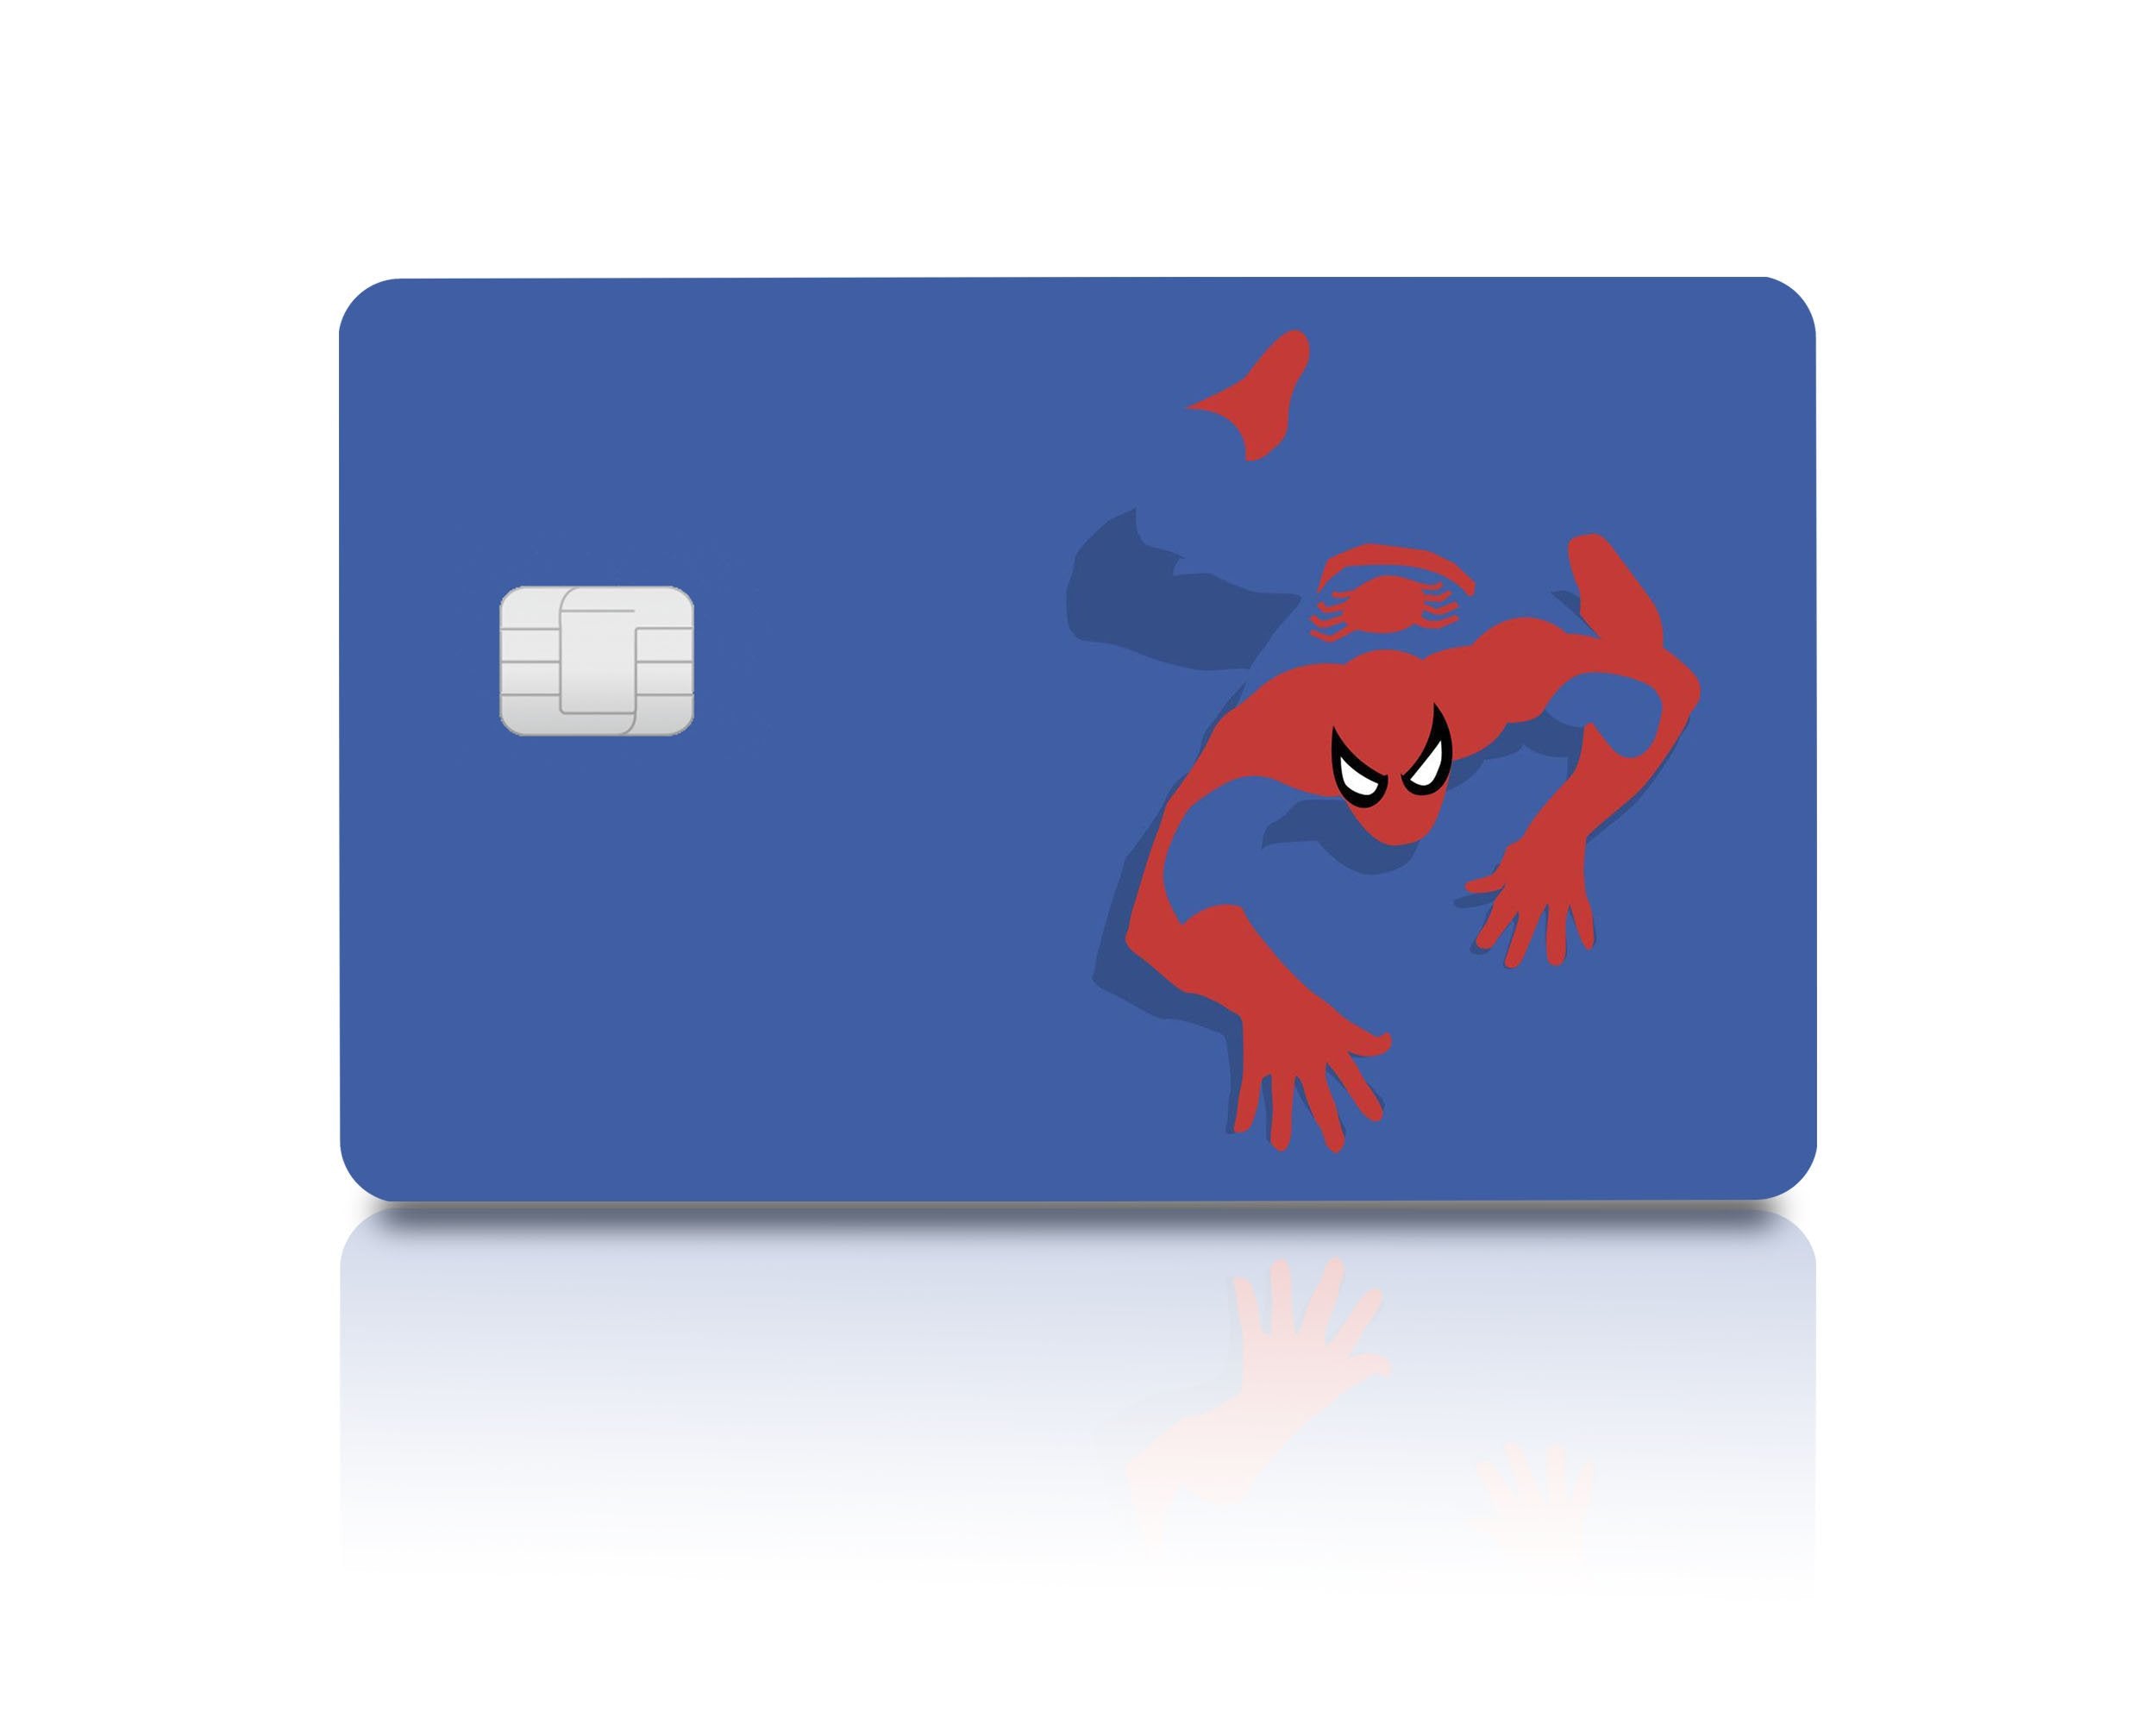 Spider-man Miles & Gwen Debit Card Skin Credit Card Skin 